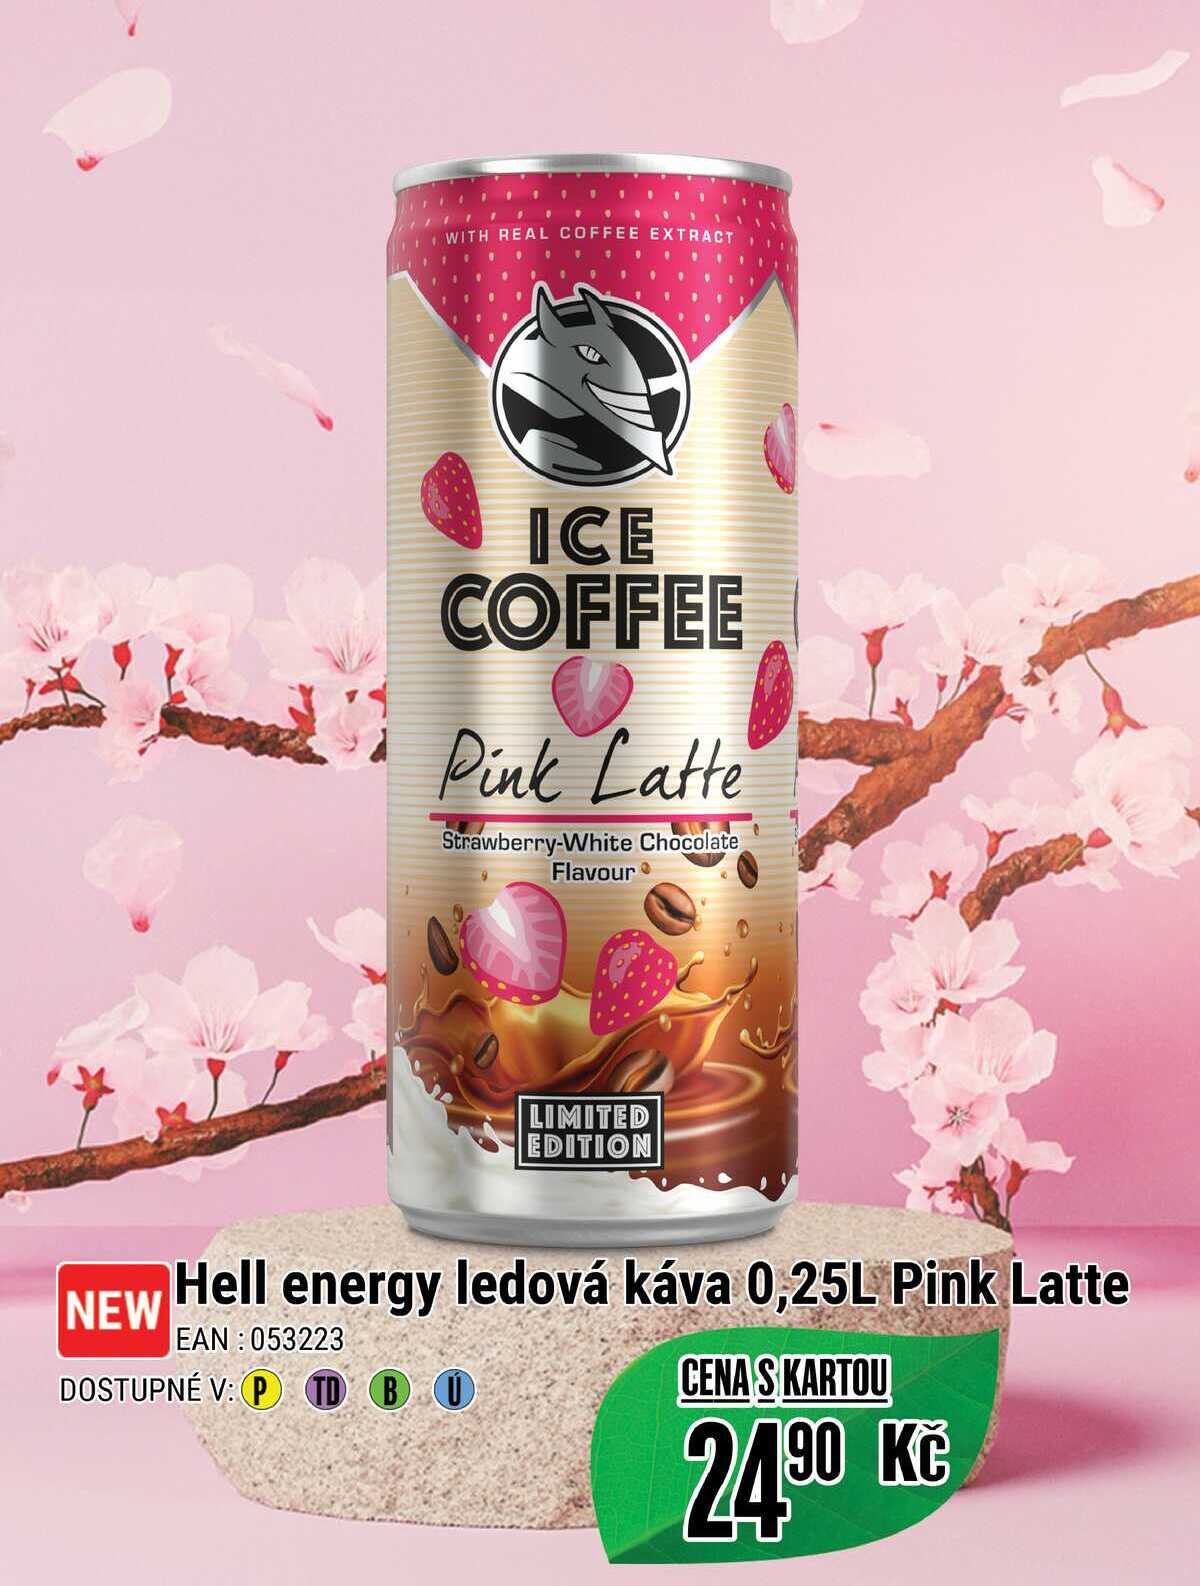 Hell energy ledová káva 0,25L Pink Latte  